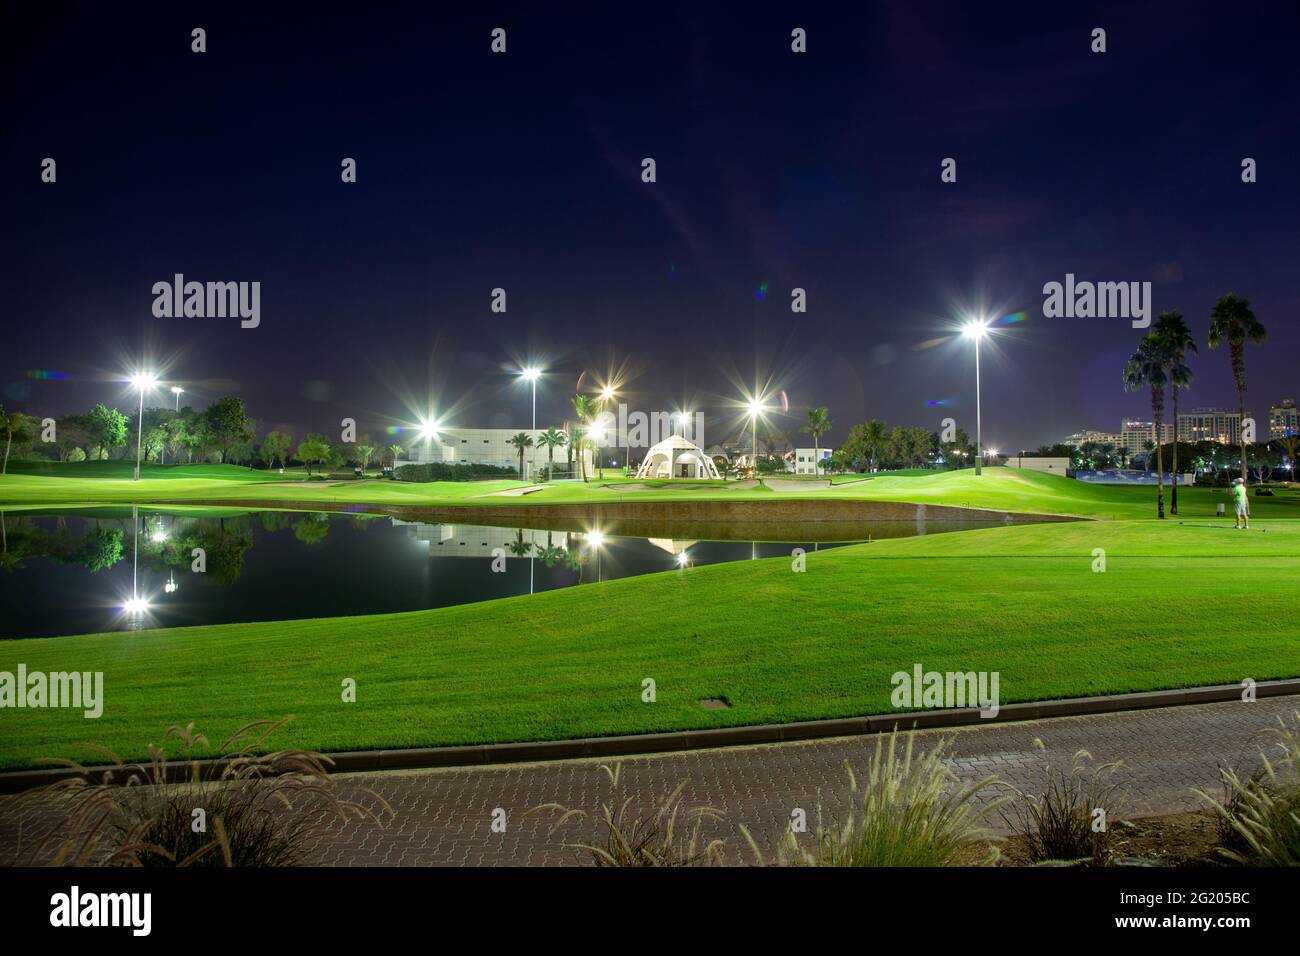 Emirates Golf Club di notte, Dubai, Emirati Arabi Uniti 30.11.2018 Foto Stock